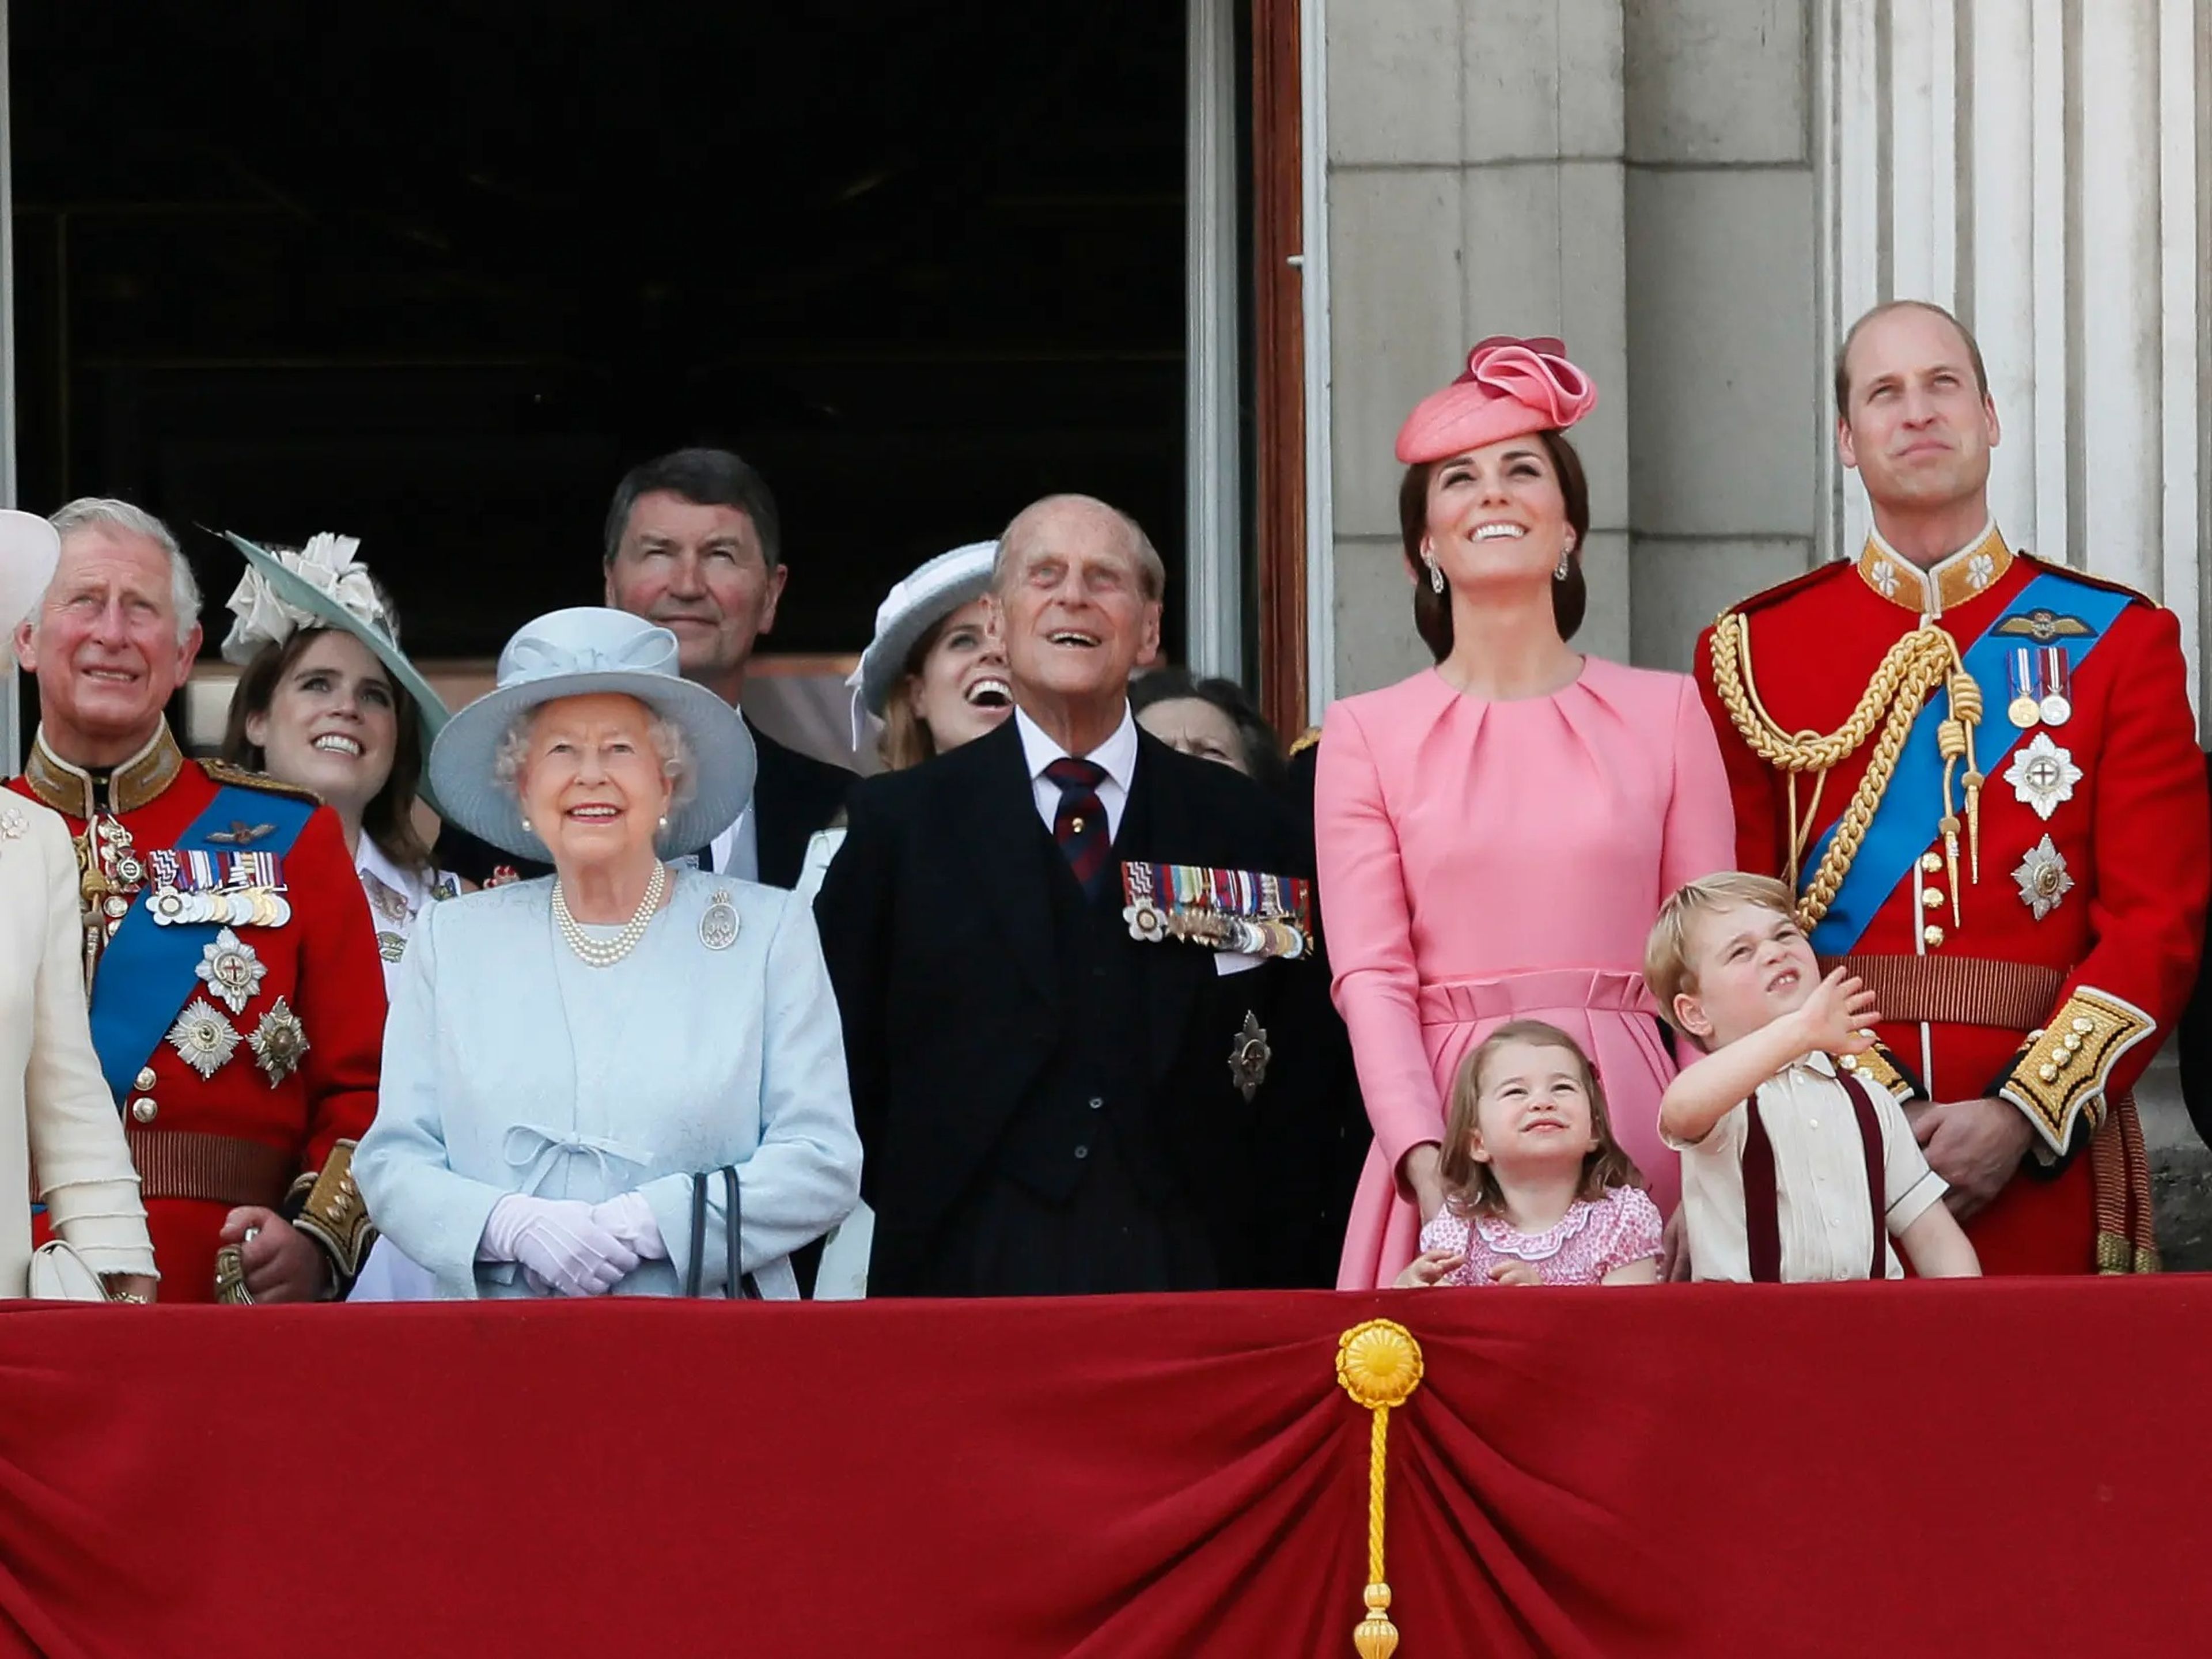 La Familia Real Británica emplea a más de 1.000 personas para asistir en sus asuntos cotidianos.